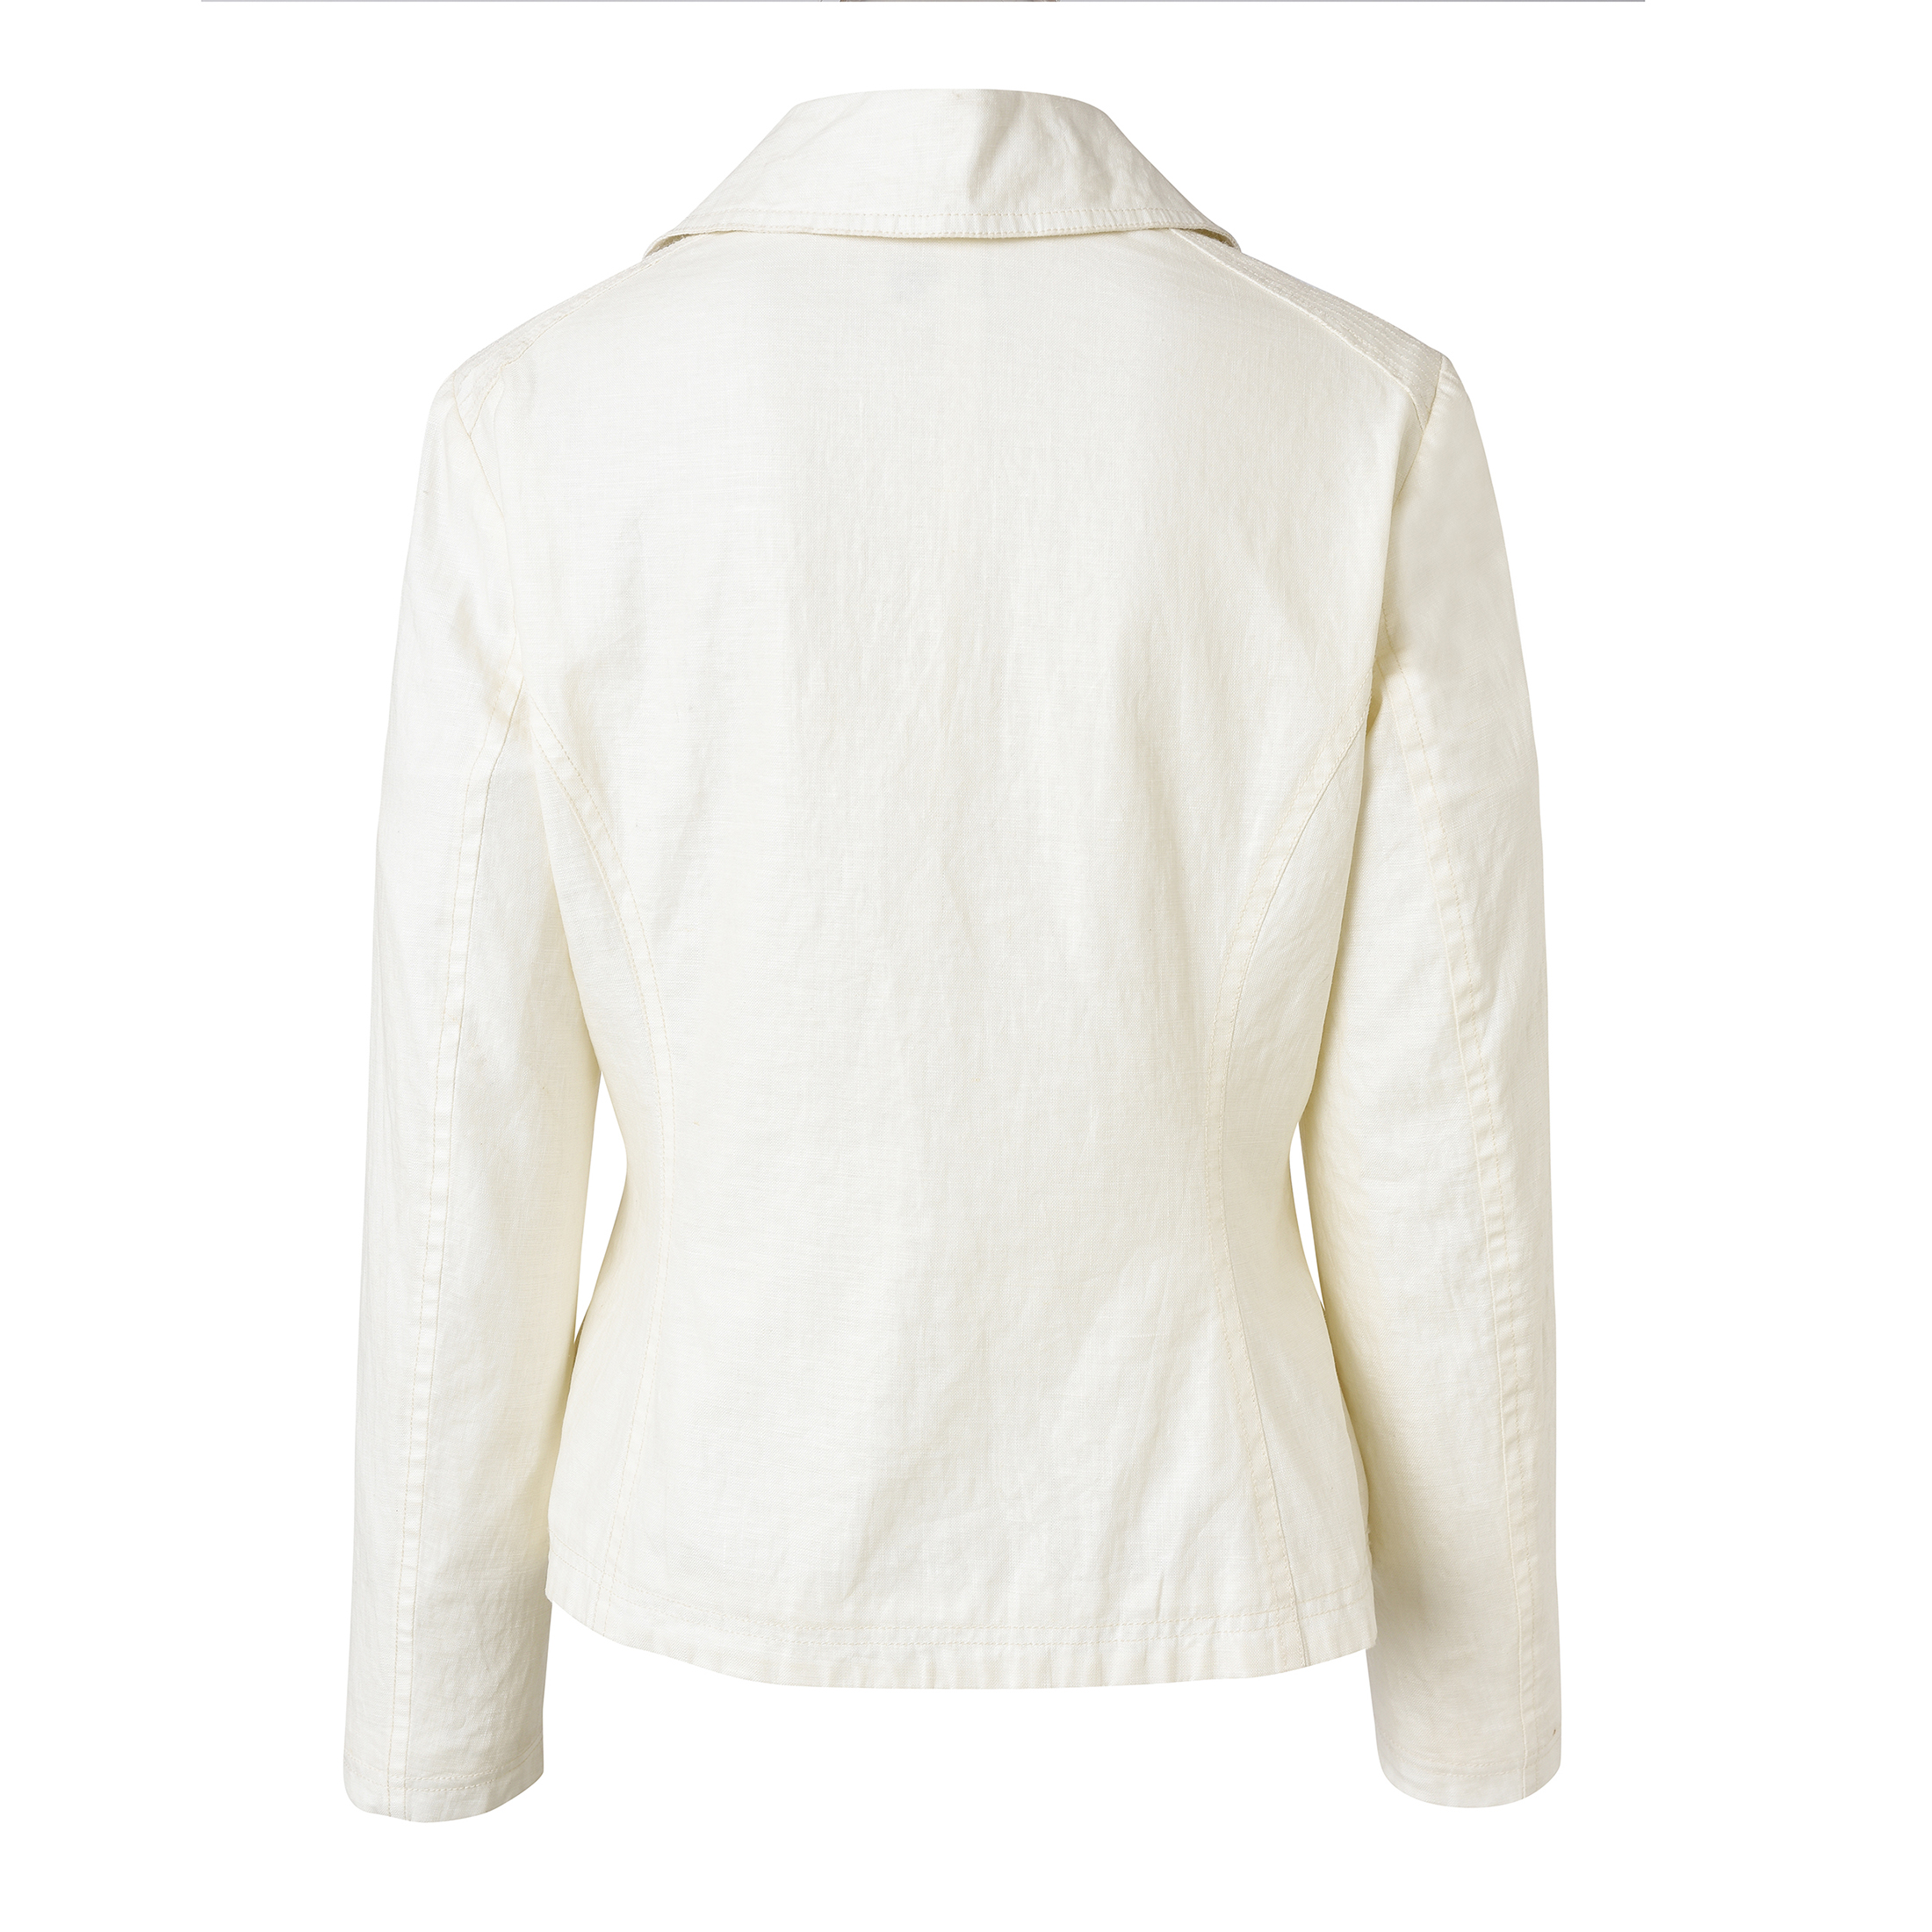 New Designed Jacket - Women's Fashionable Long Sleeve Cotton Jacket